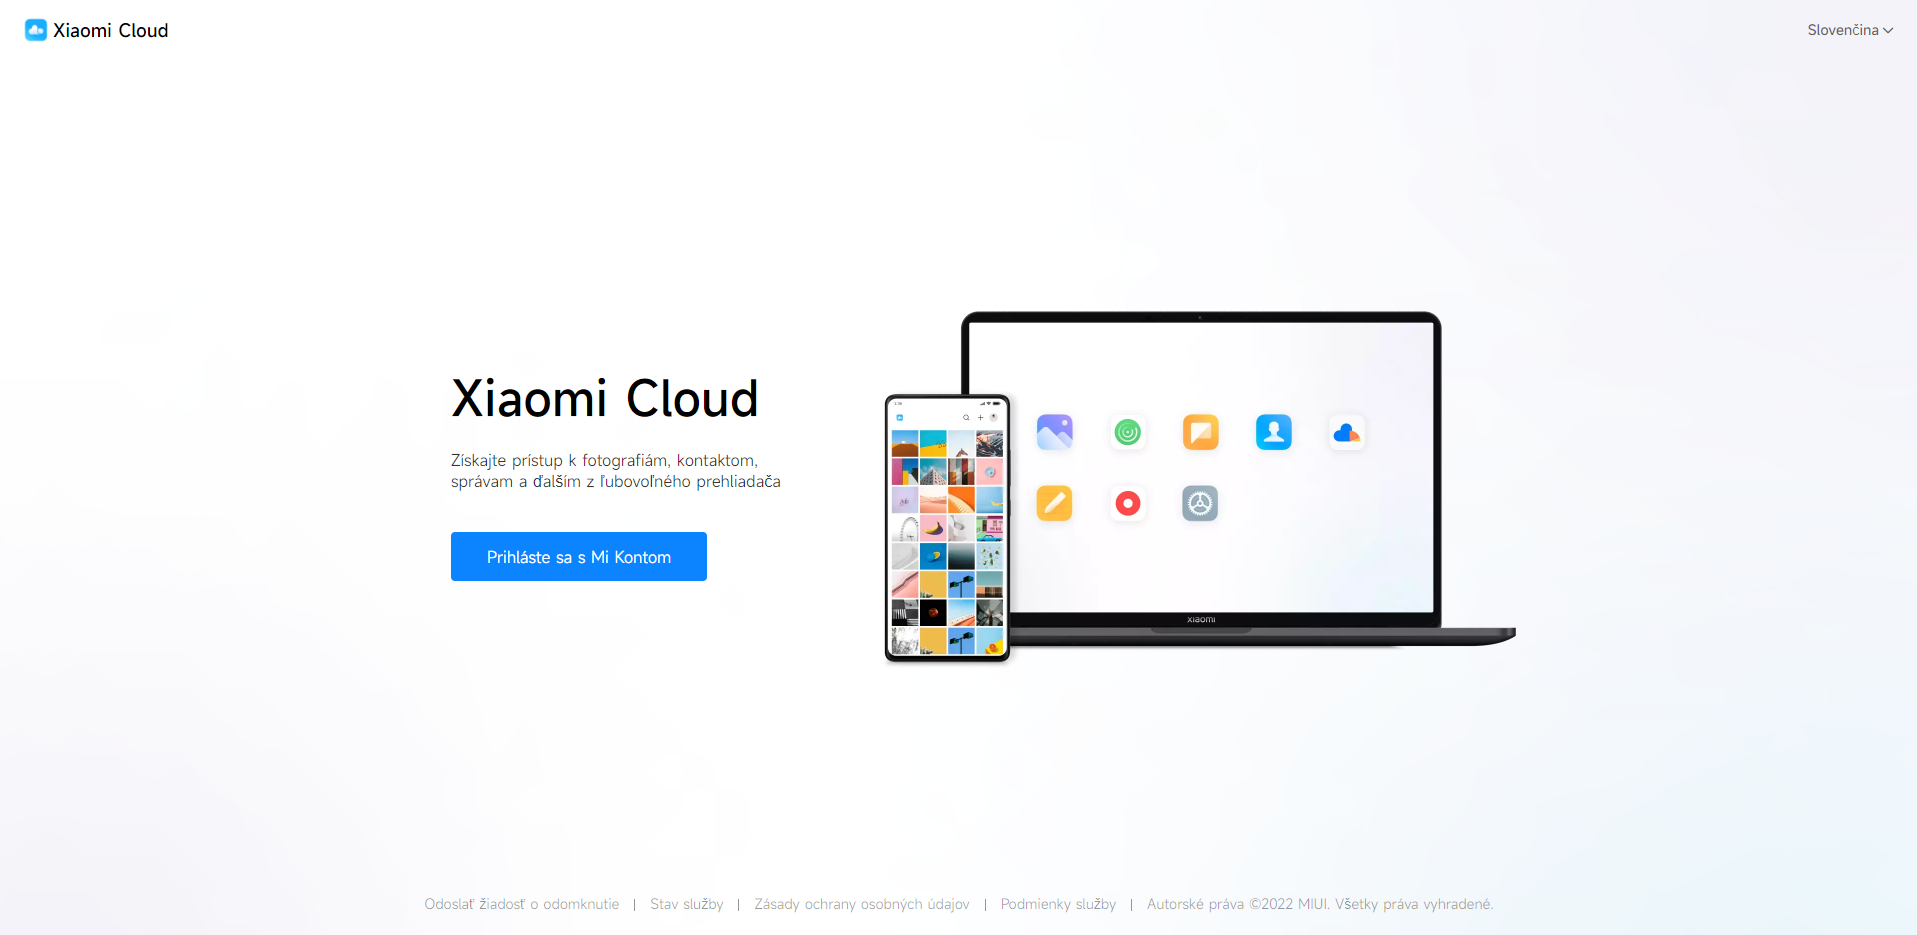 Xiaomi cloud что это